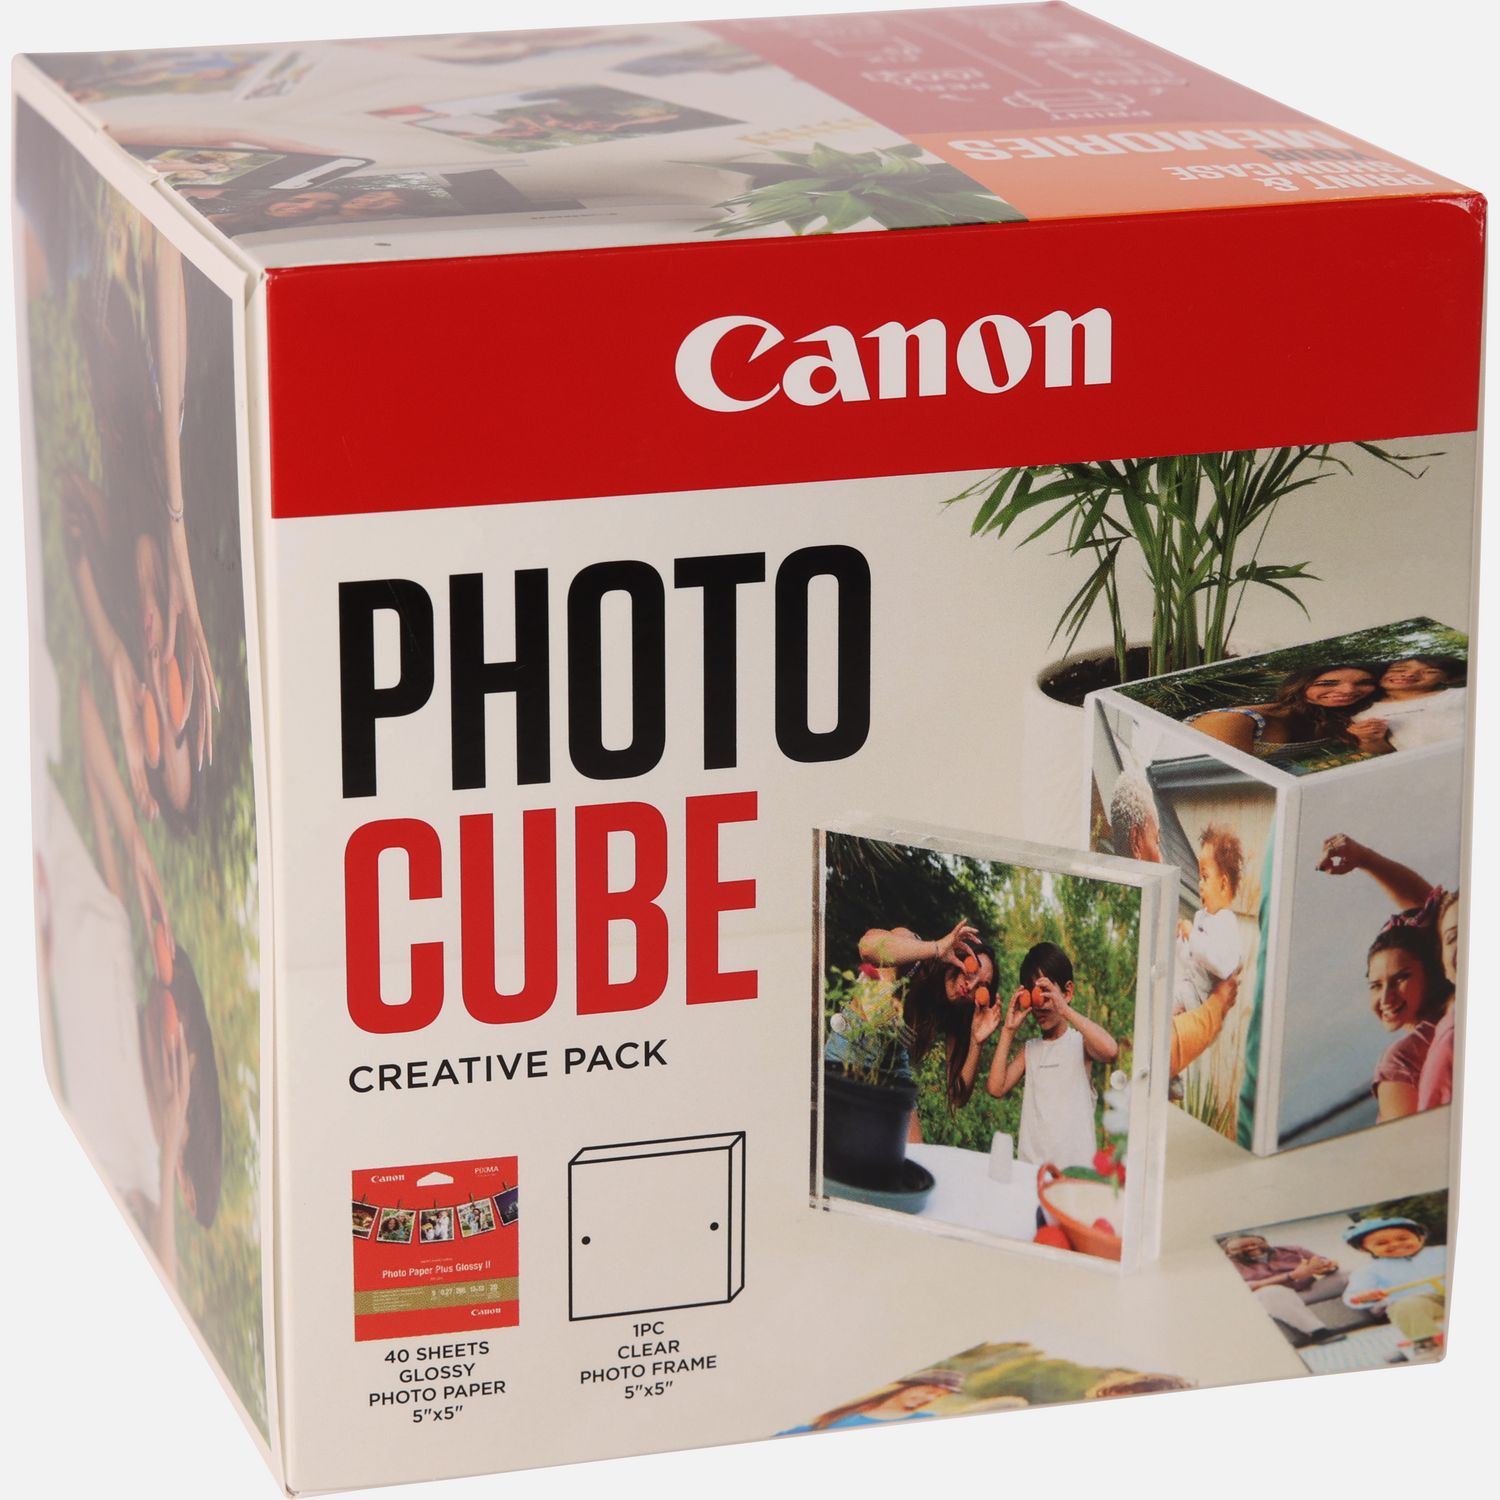 Image of Canon Photo Cube e cornice + carta fotografica lucida Plus Glossy II PP-201 da 5"x5" (40 fogli) - Pacchetto creativo, arancione